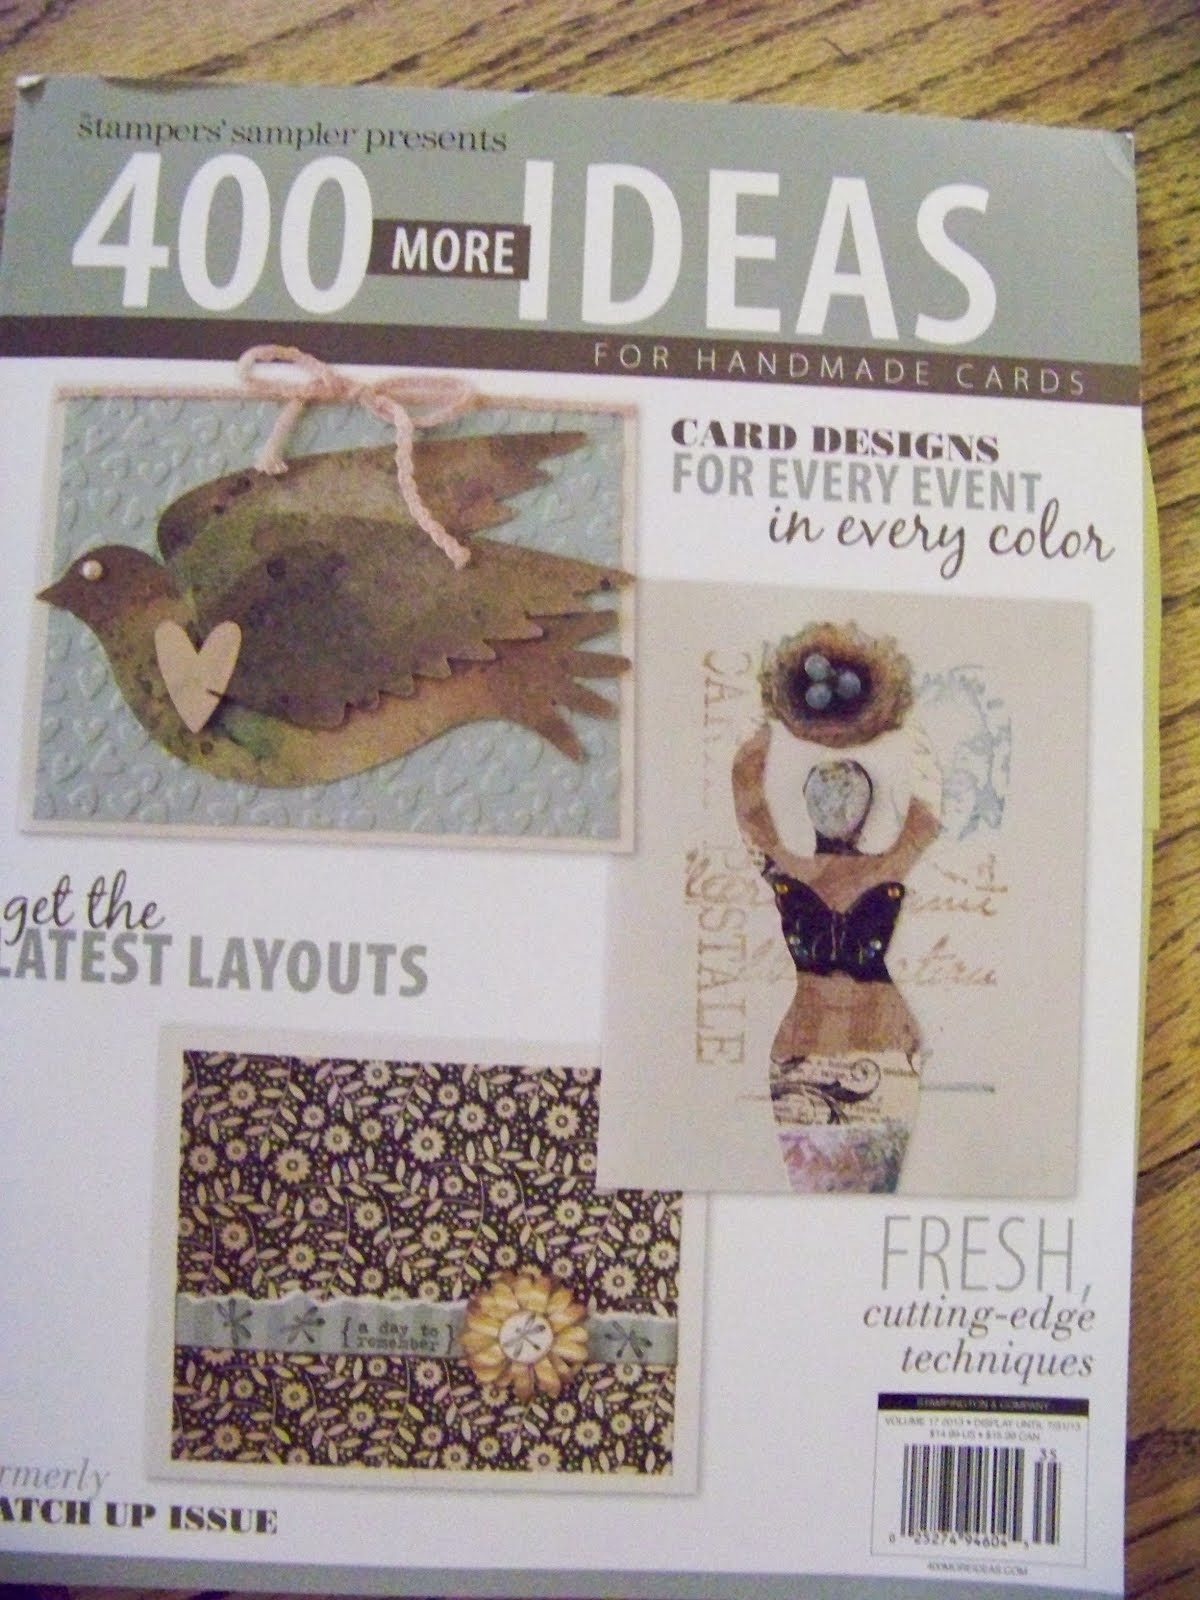 400 More Ideas for handmade cards